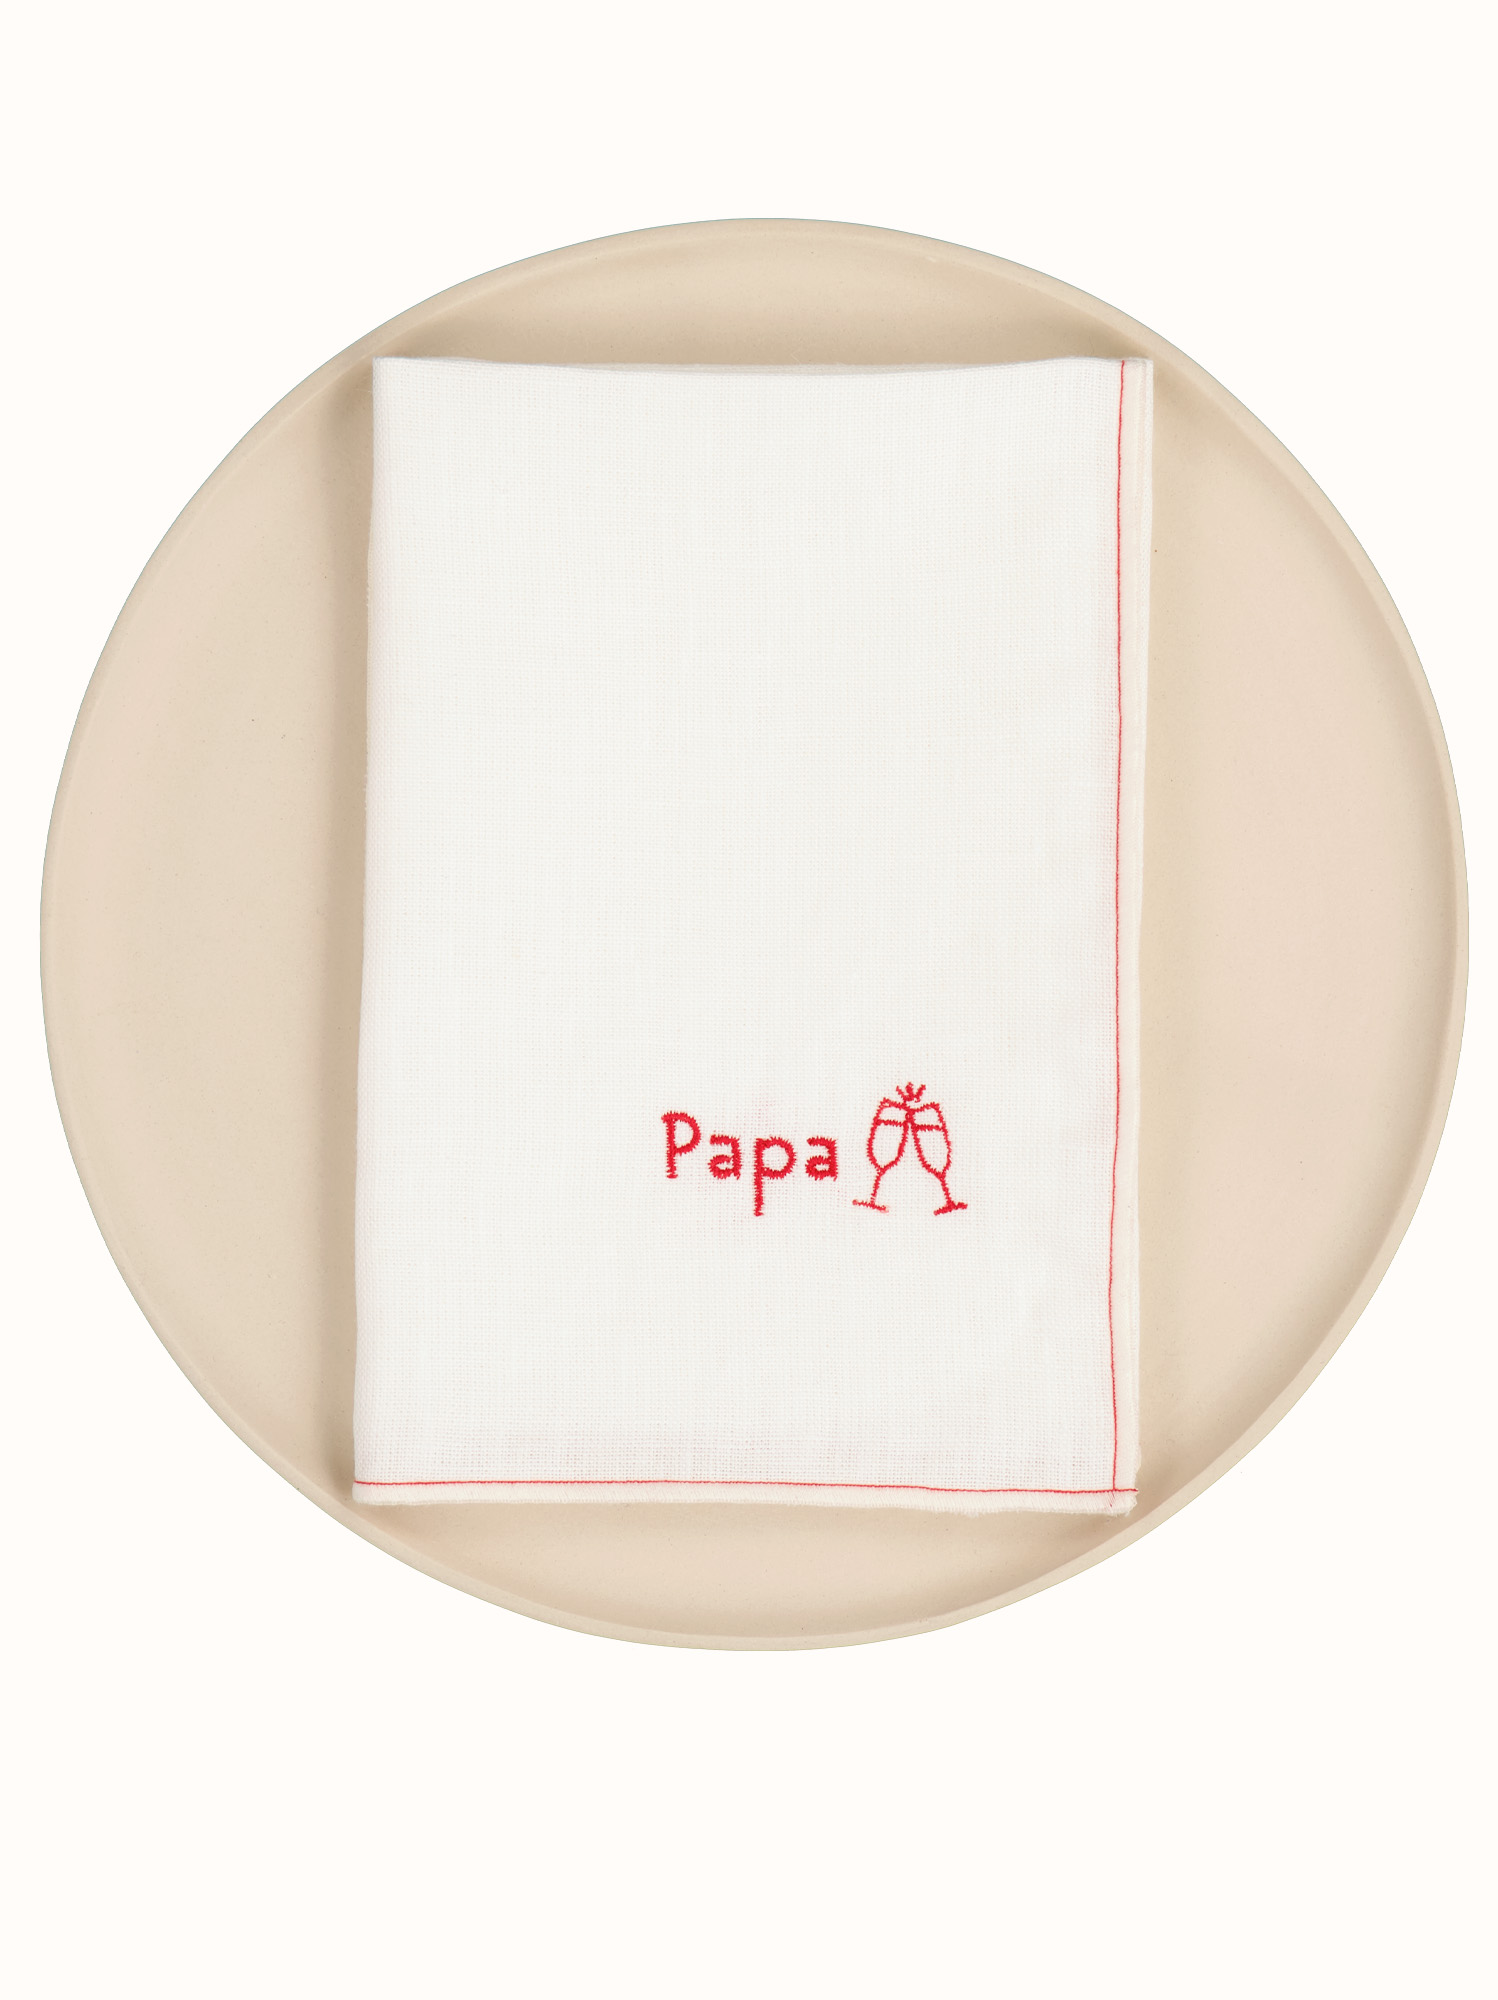 Serviette de table enfant : serviette classique VS serviette